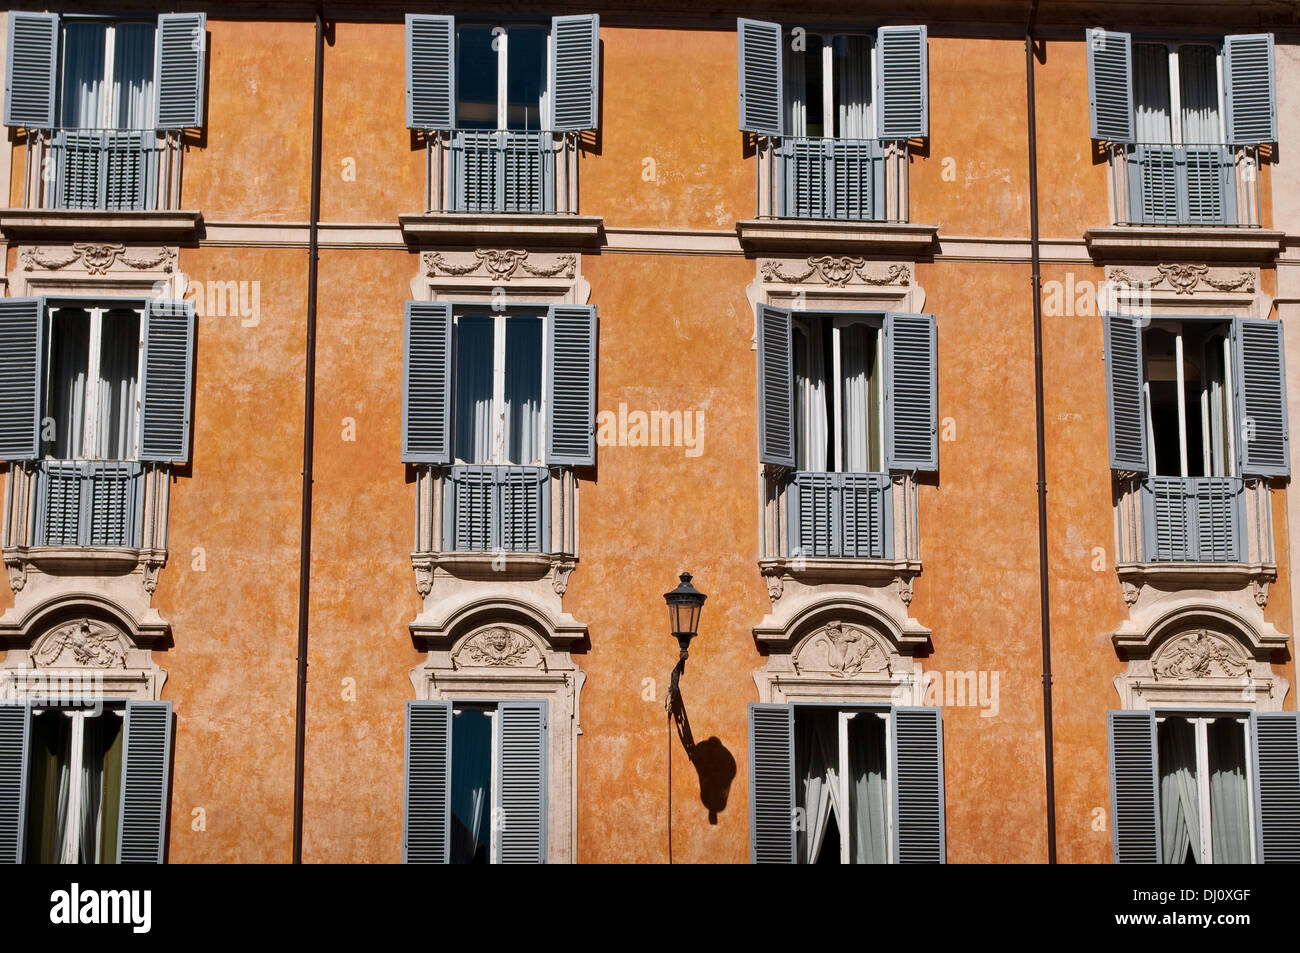 Configuration des fenêtres, Testa Palazzo Piccolomini, palais du 18ème siècle dans le quartier de Trevi, Rome, Italie Banque D'Images